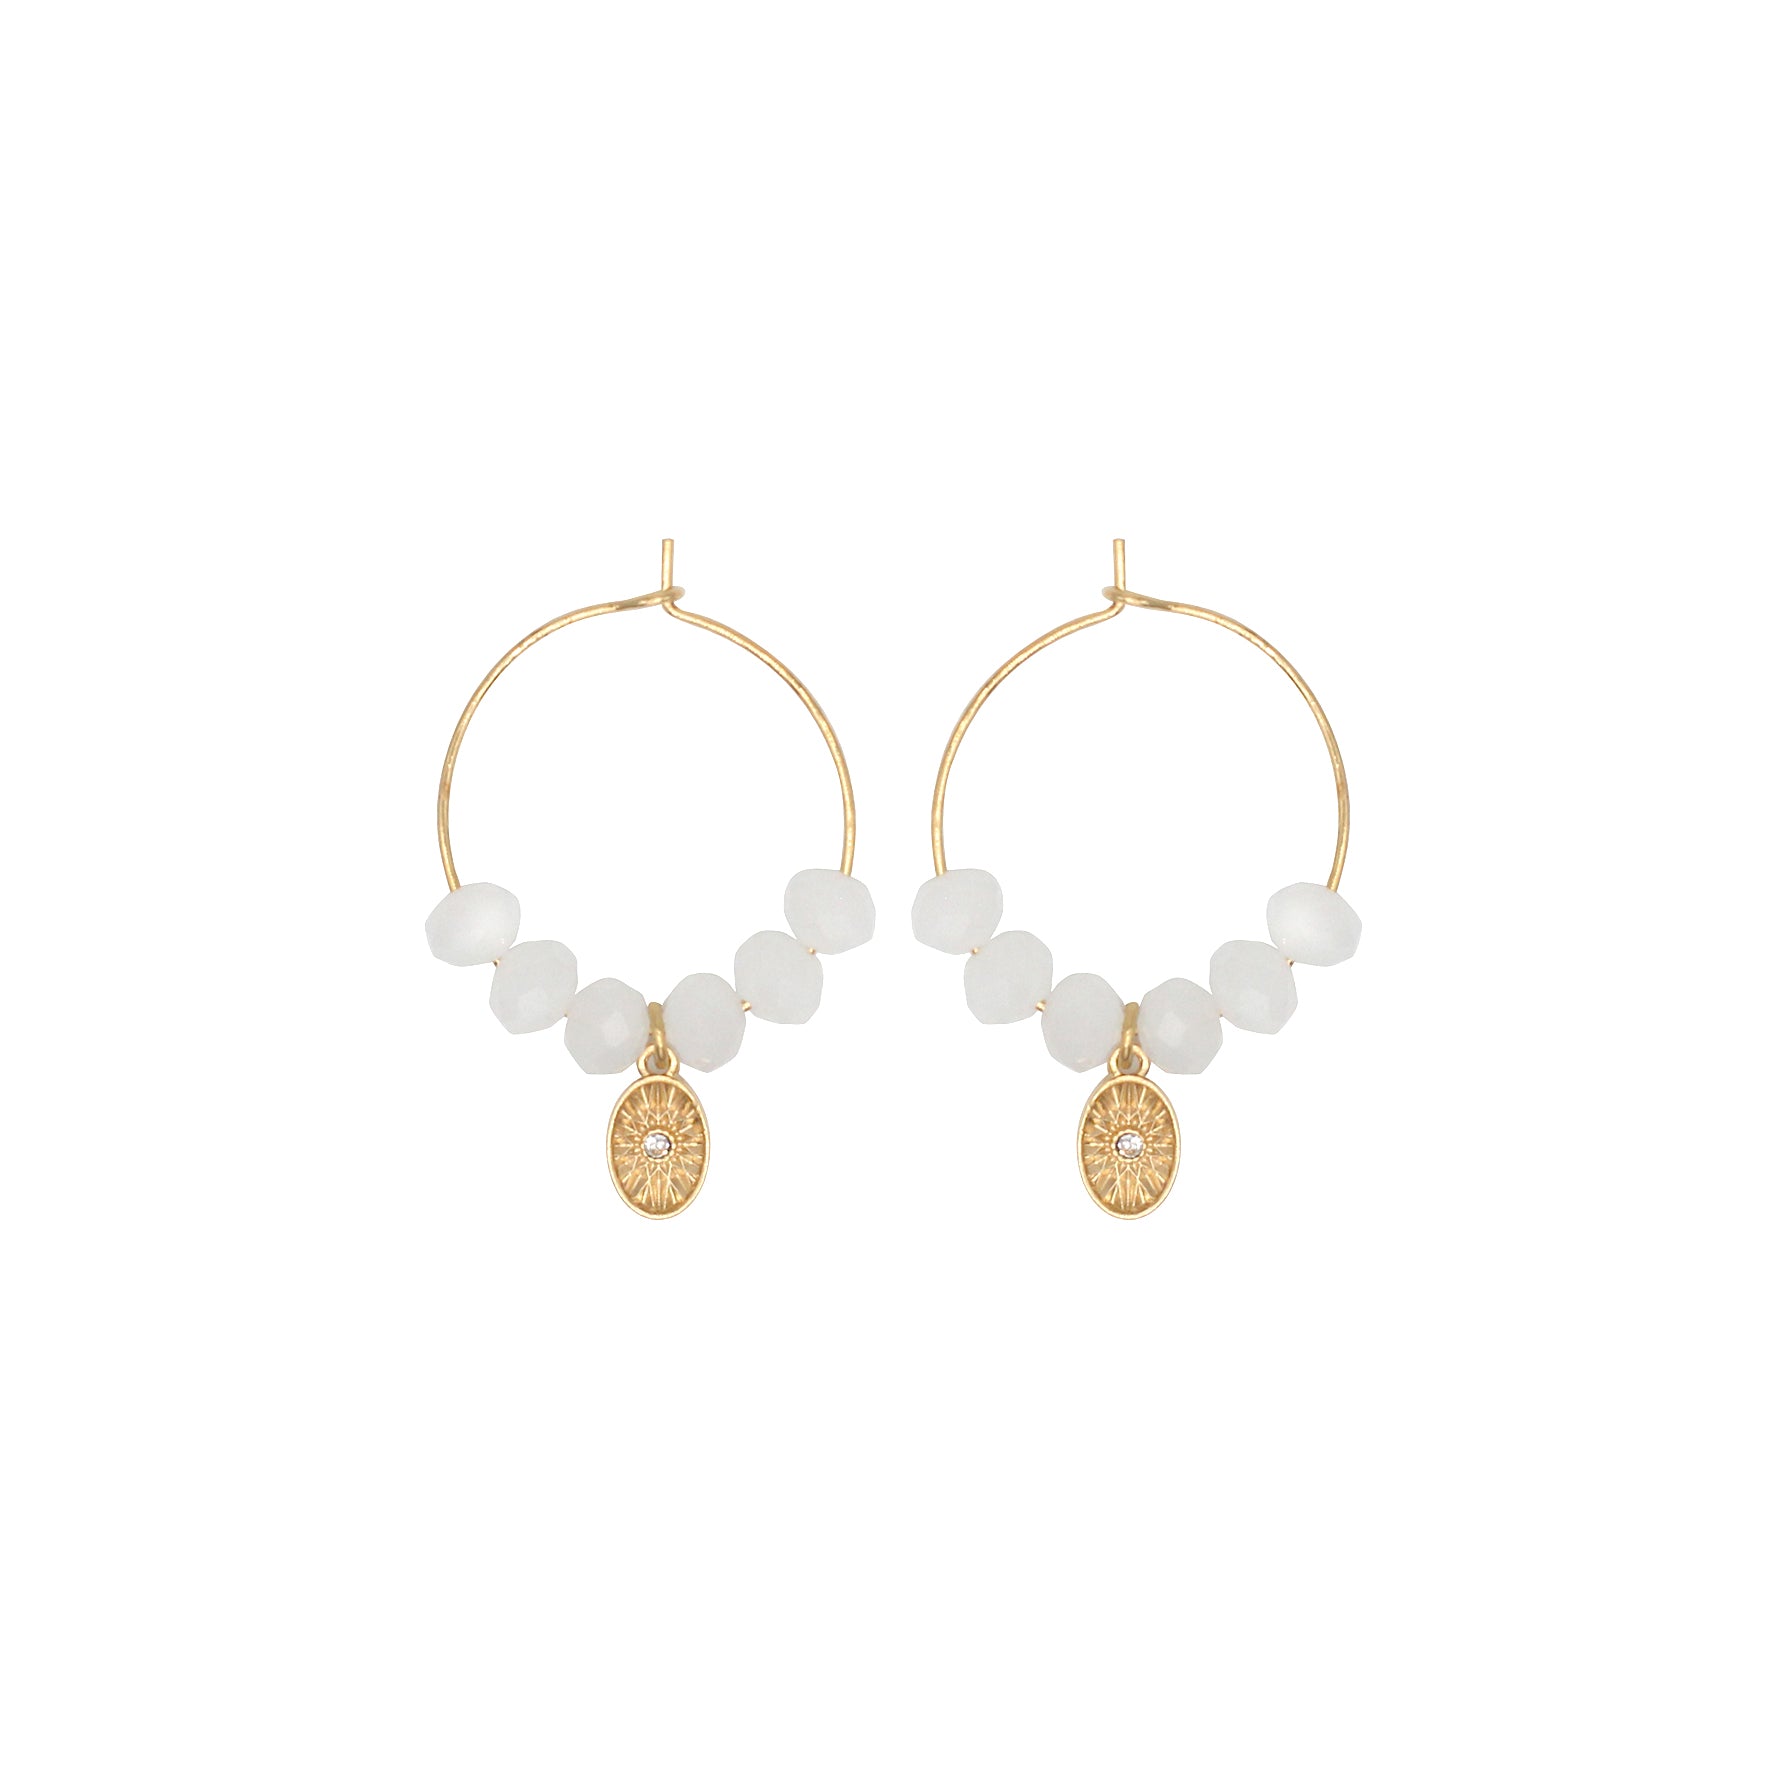 Letizia earrings